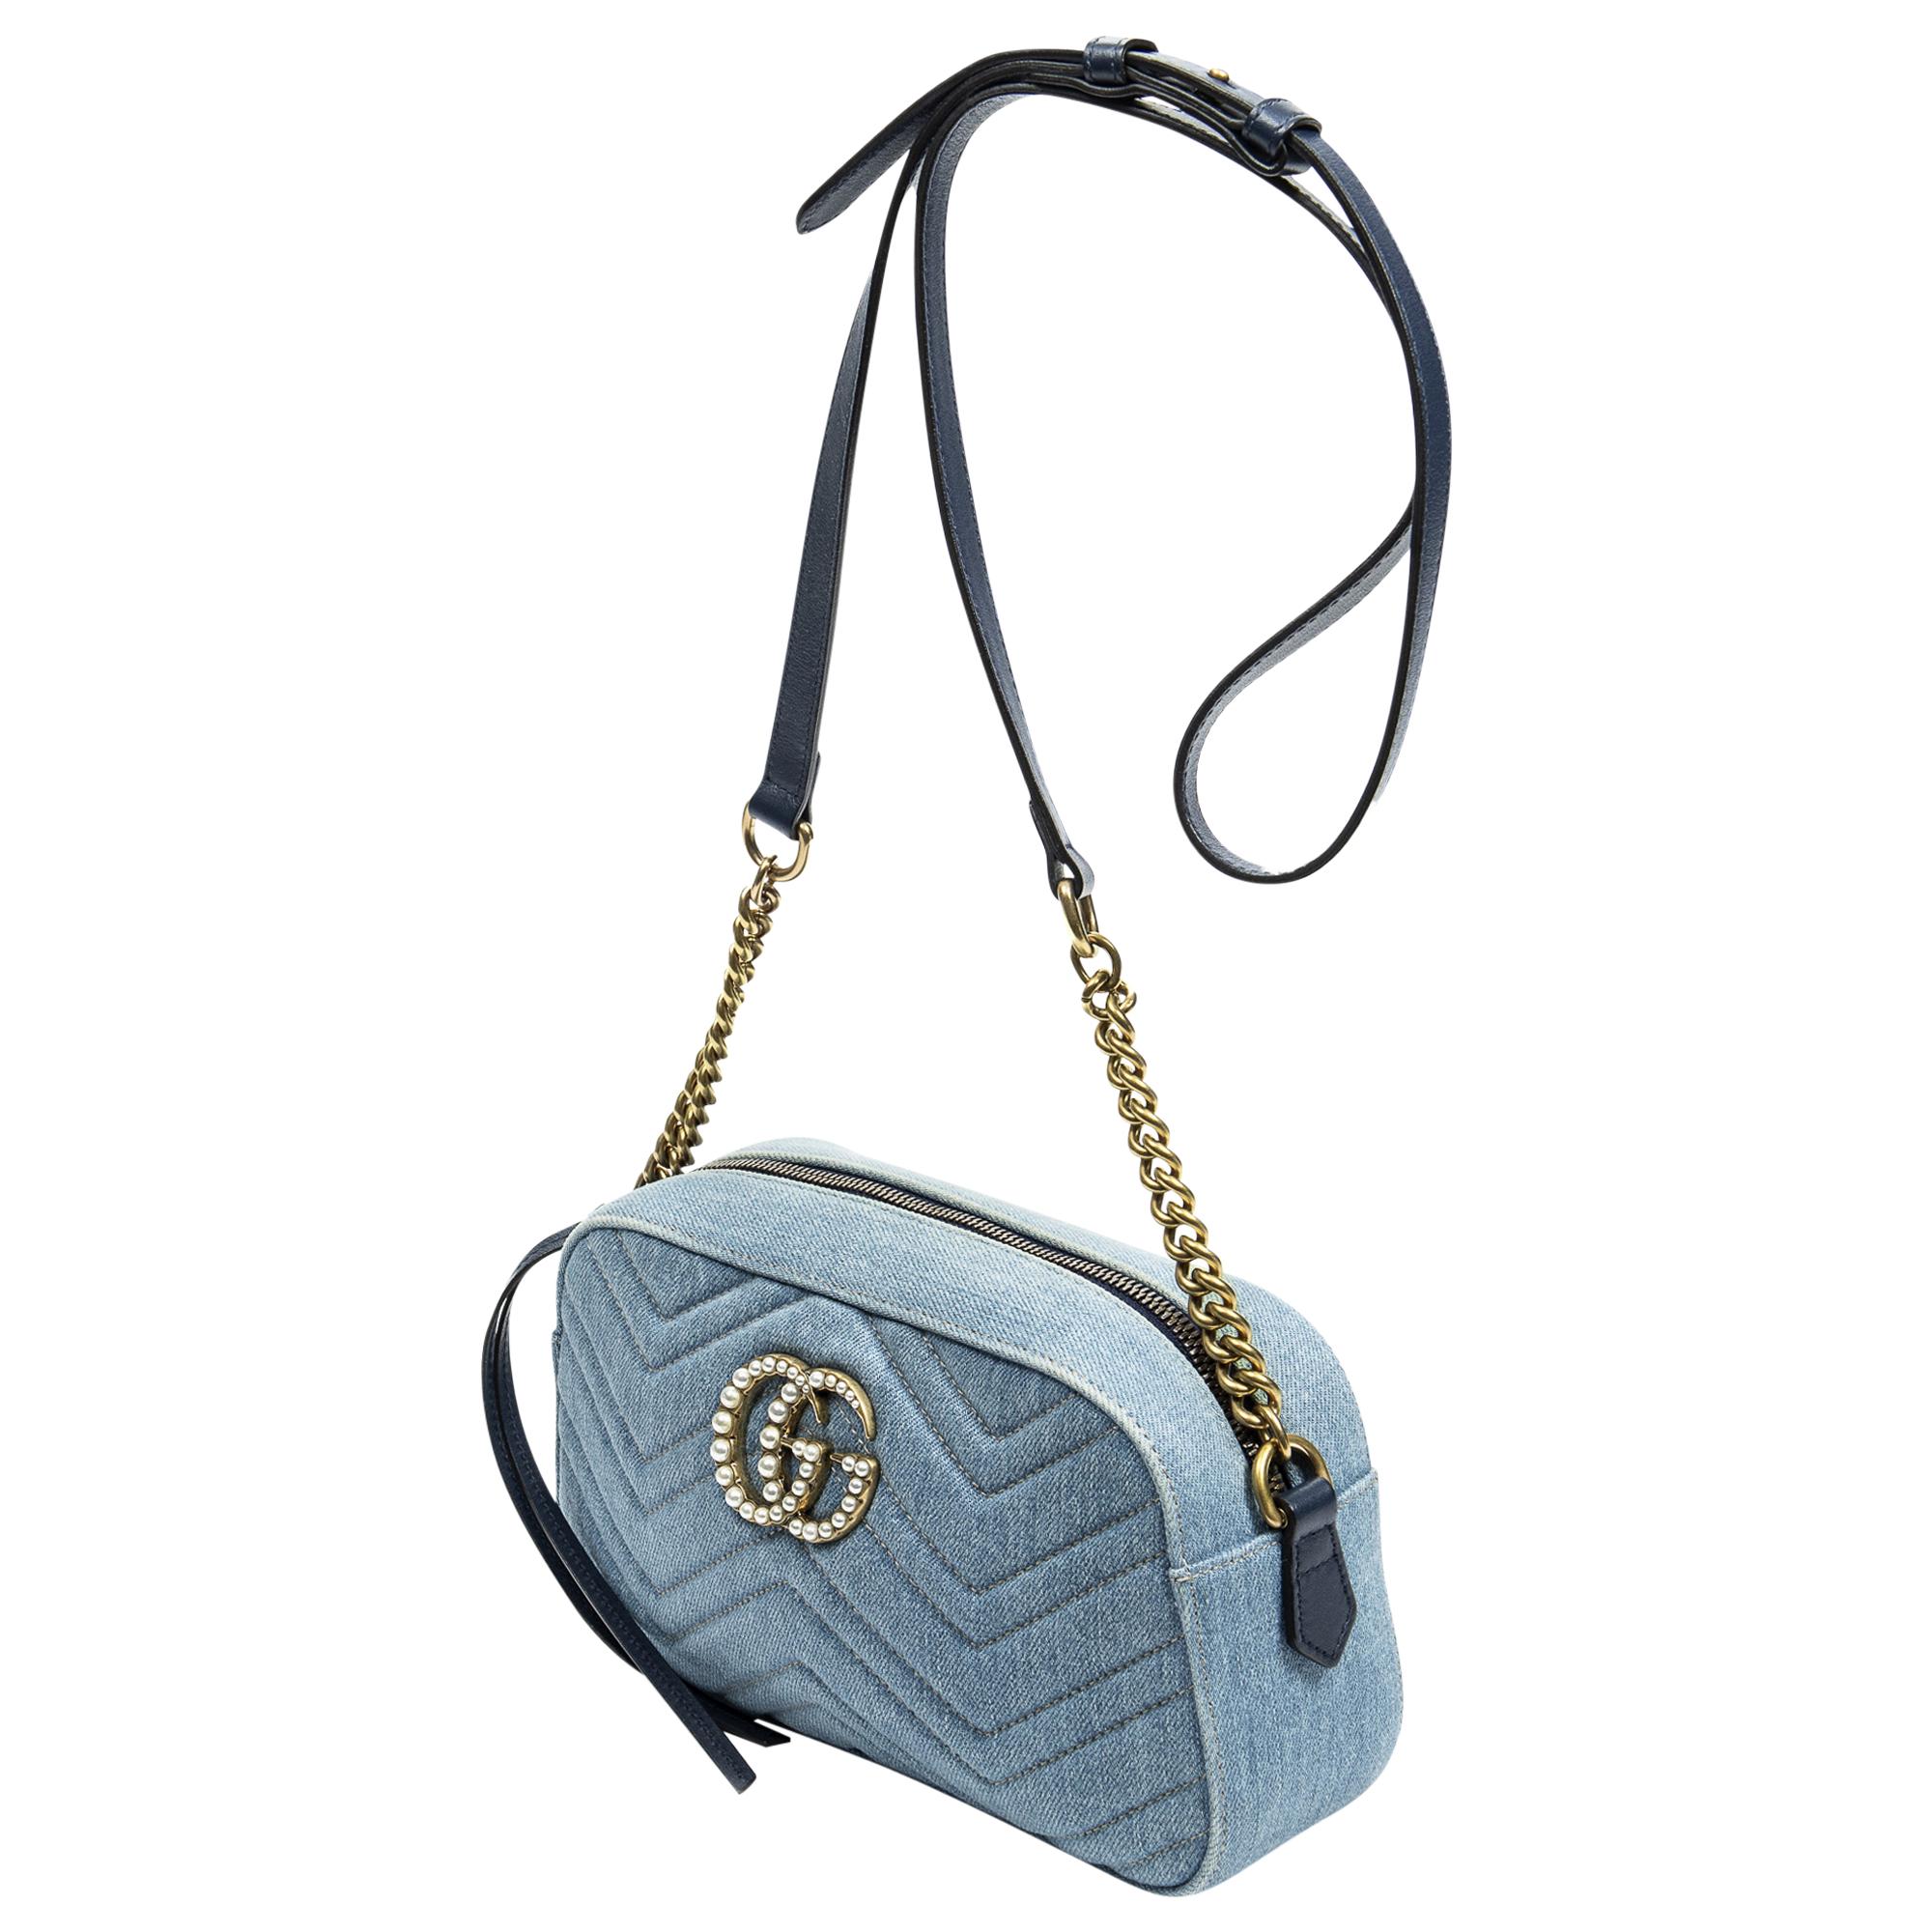 Mit der Gucci Blue Denim Small GG Marmont Pearl Bag können Sie Ihren Freizeit-Chic aufpeppen. Sie ist aus hochwertigem Denim in einem leuchtenden Blauton gefertigt und strahlt mühelosen Stil aus. Die Tasche ist mit goldglänzenden Beschlägen und